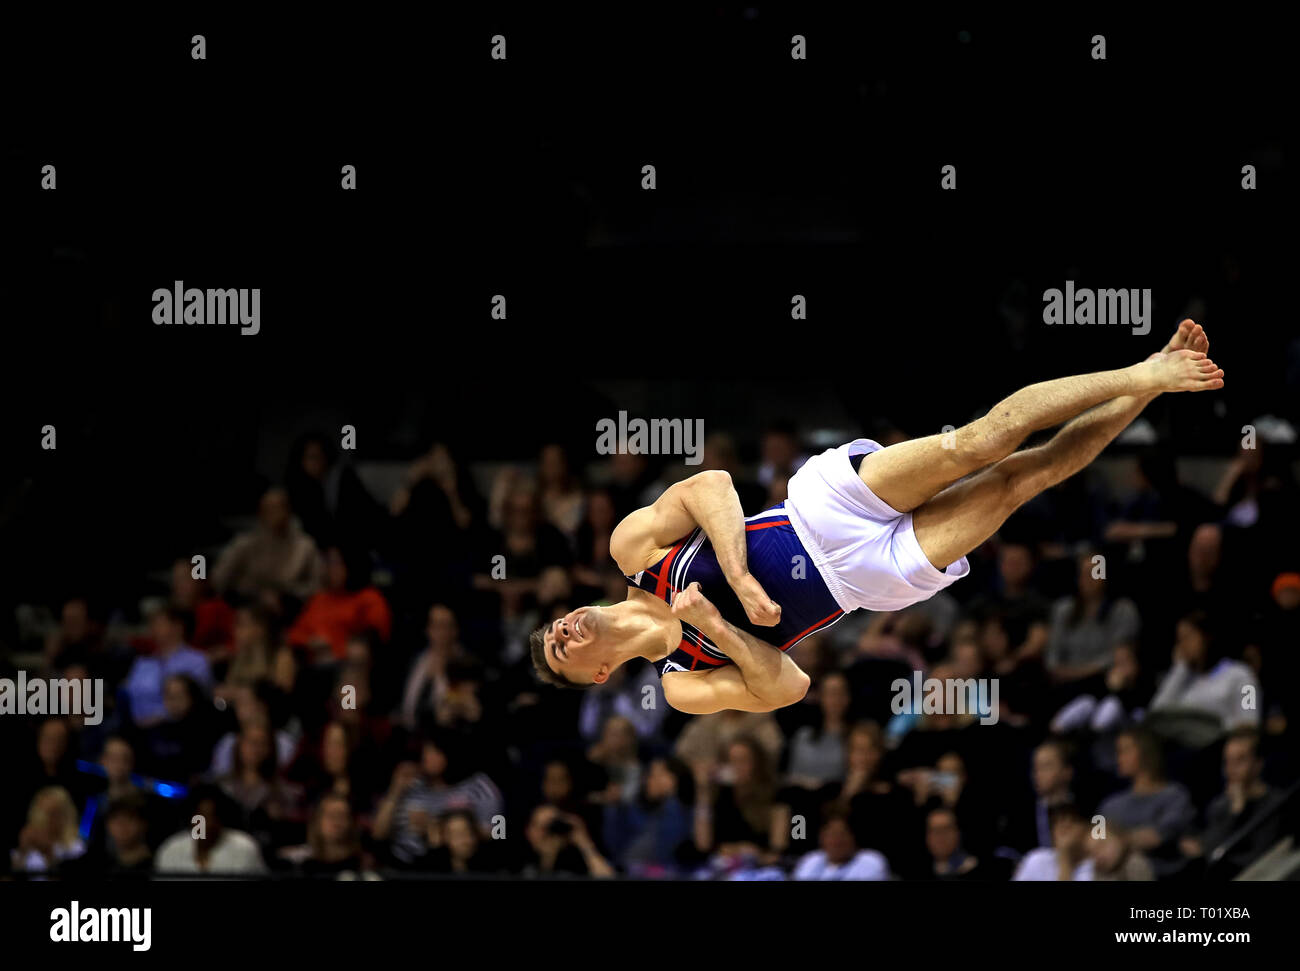 Max Whitlock während der Gymnastik Britischen Meisterschaften 2019 im M&S Bank Arena, Liverpool. Stockfoto